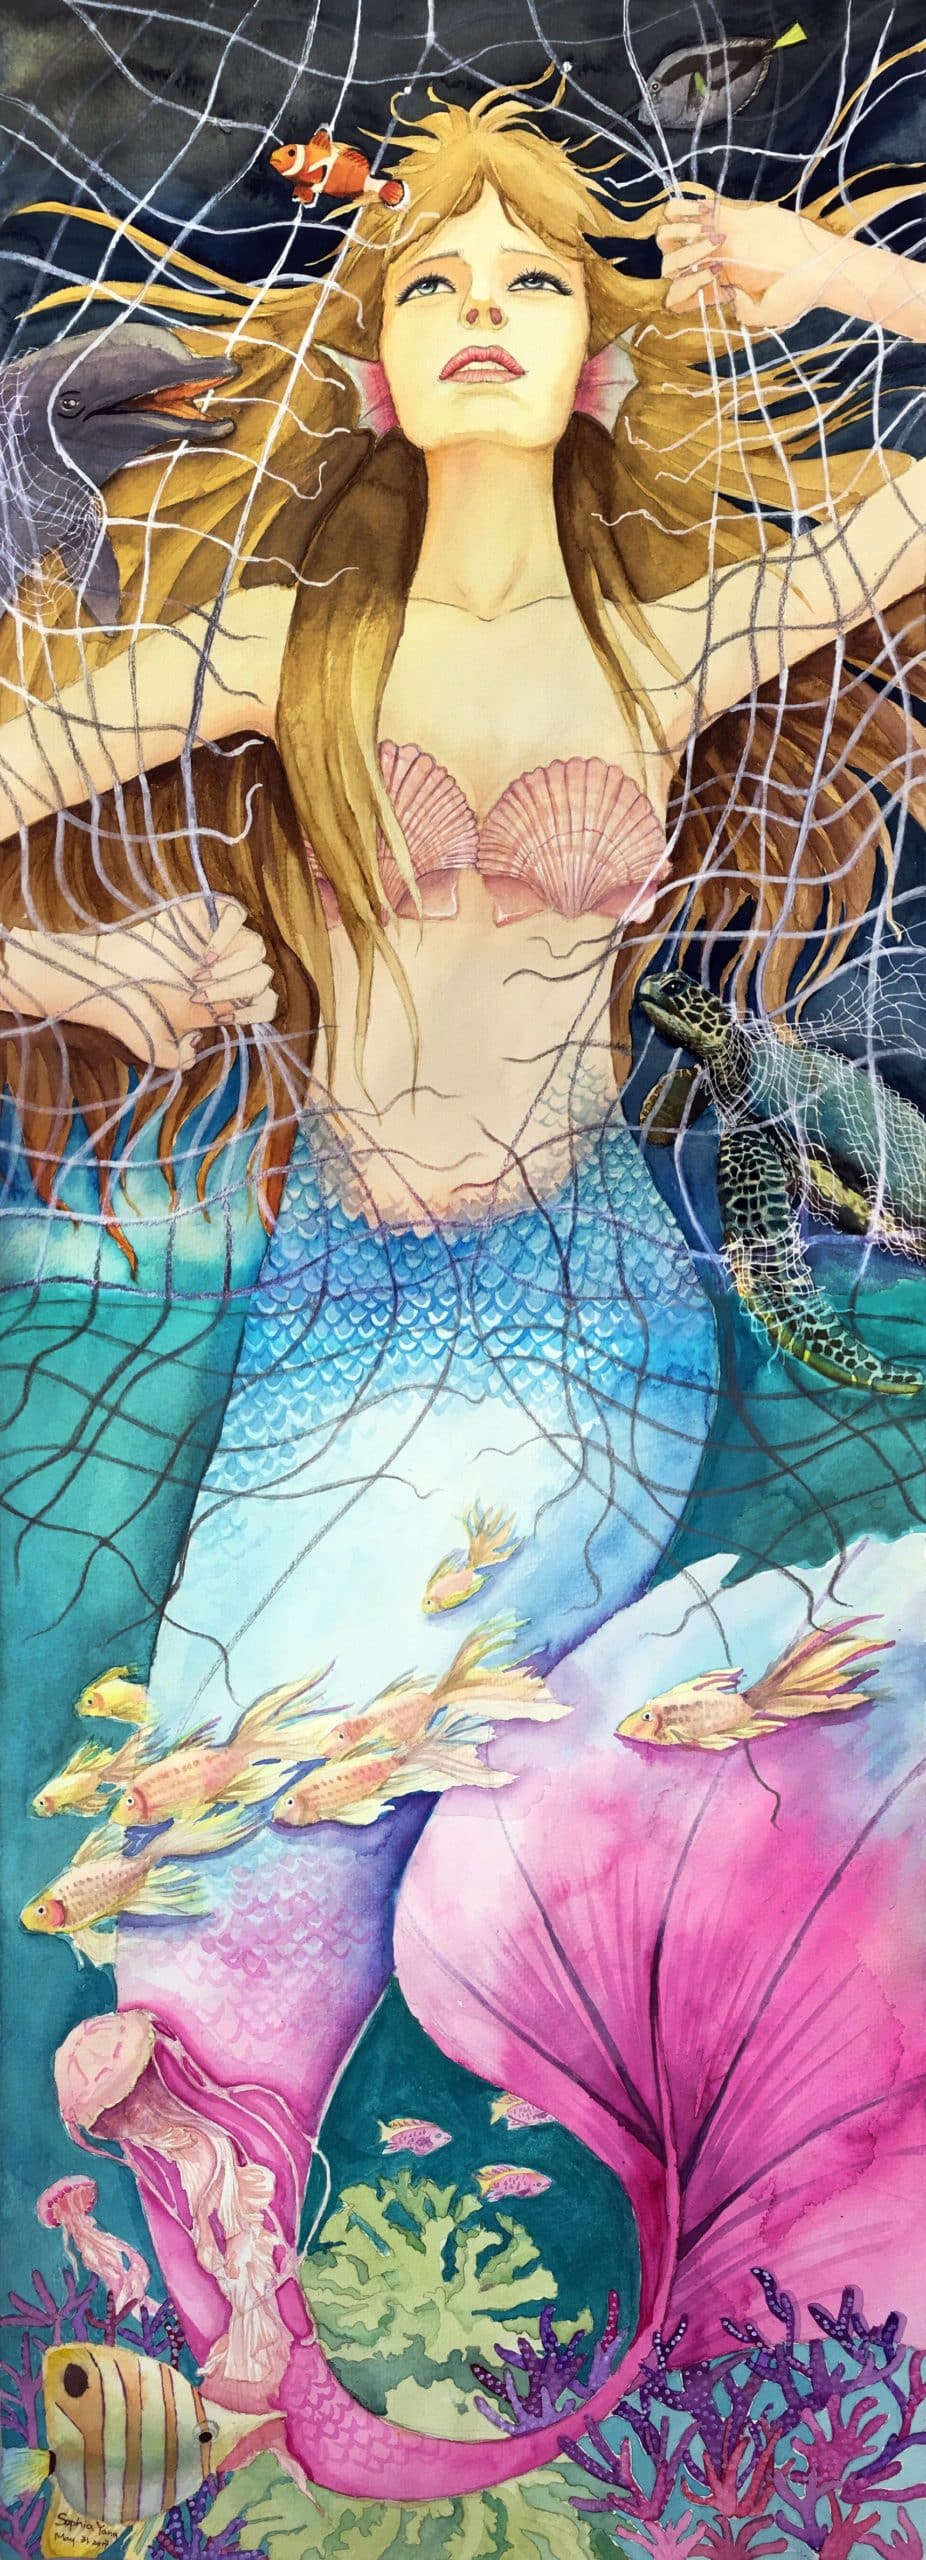 Mermaid's Hope • Bow Seat Ocean Awareness Programs